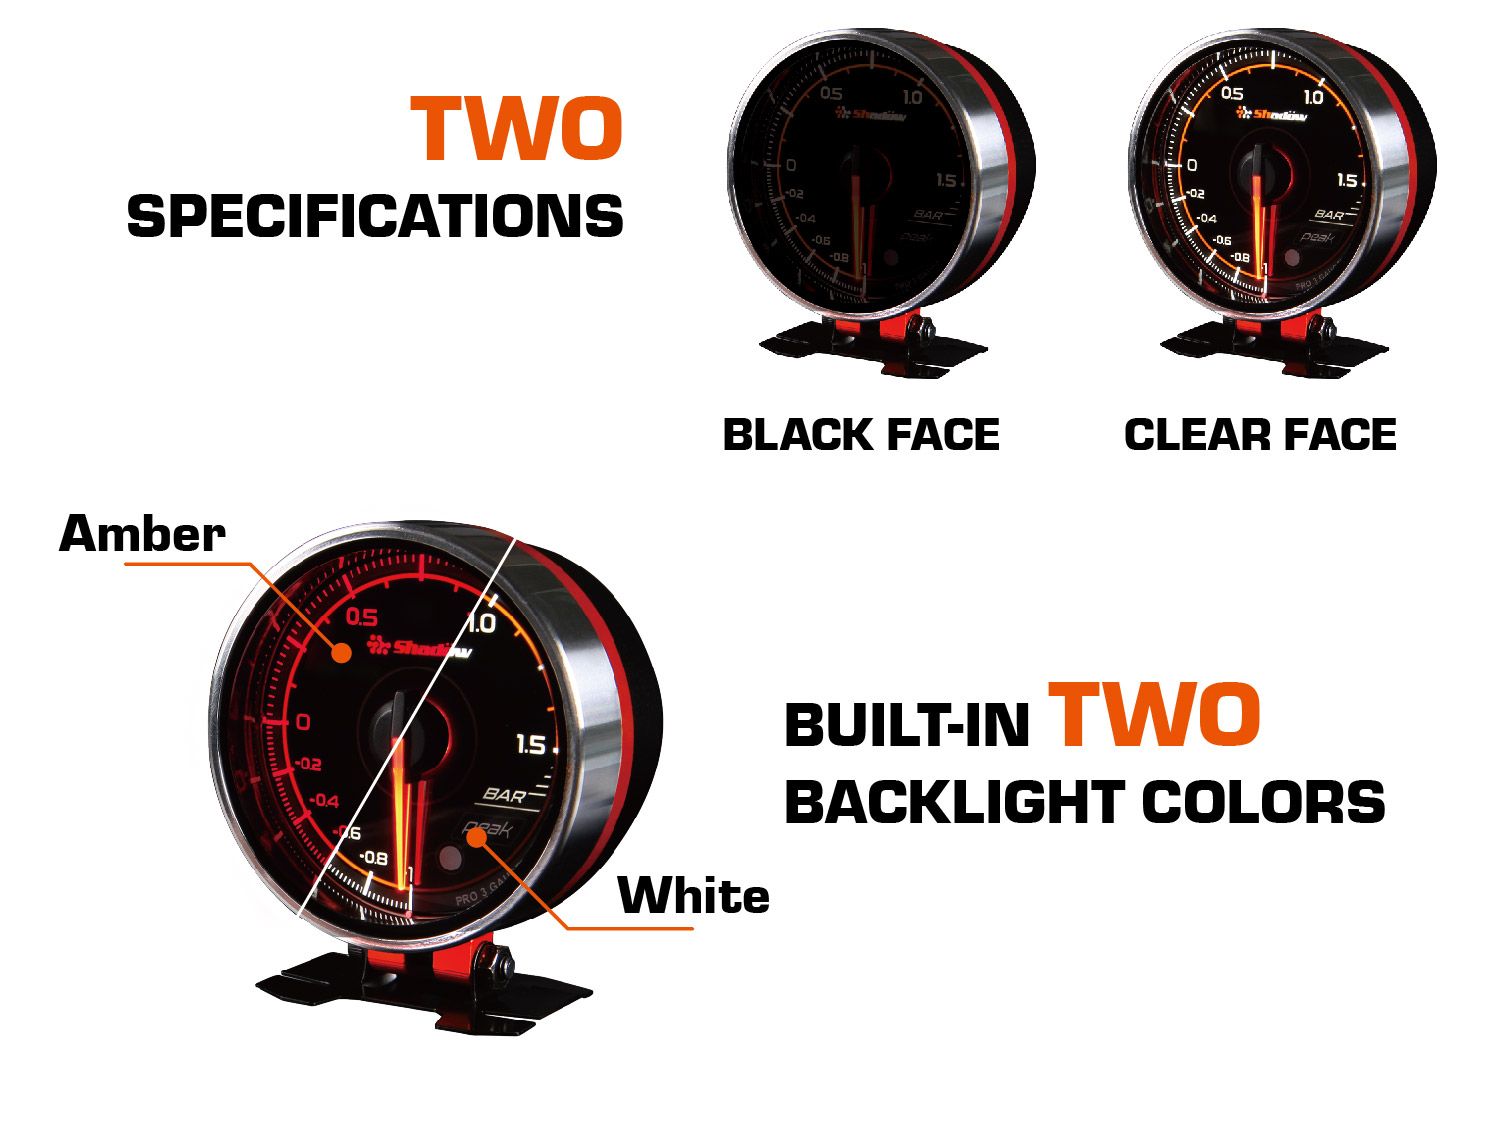 هناك مواصفتان وتضمن اثنتان من ألوان الإضاءة الخلفية لعداد السباق Shadow PRO3